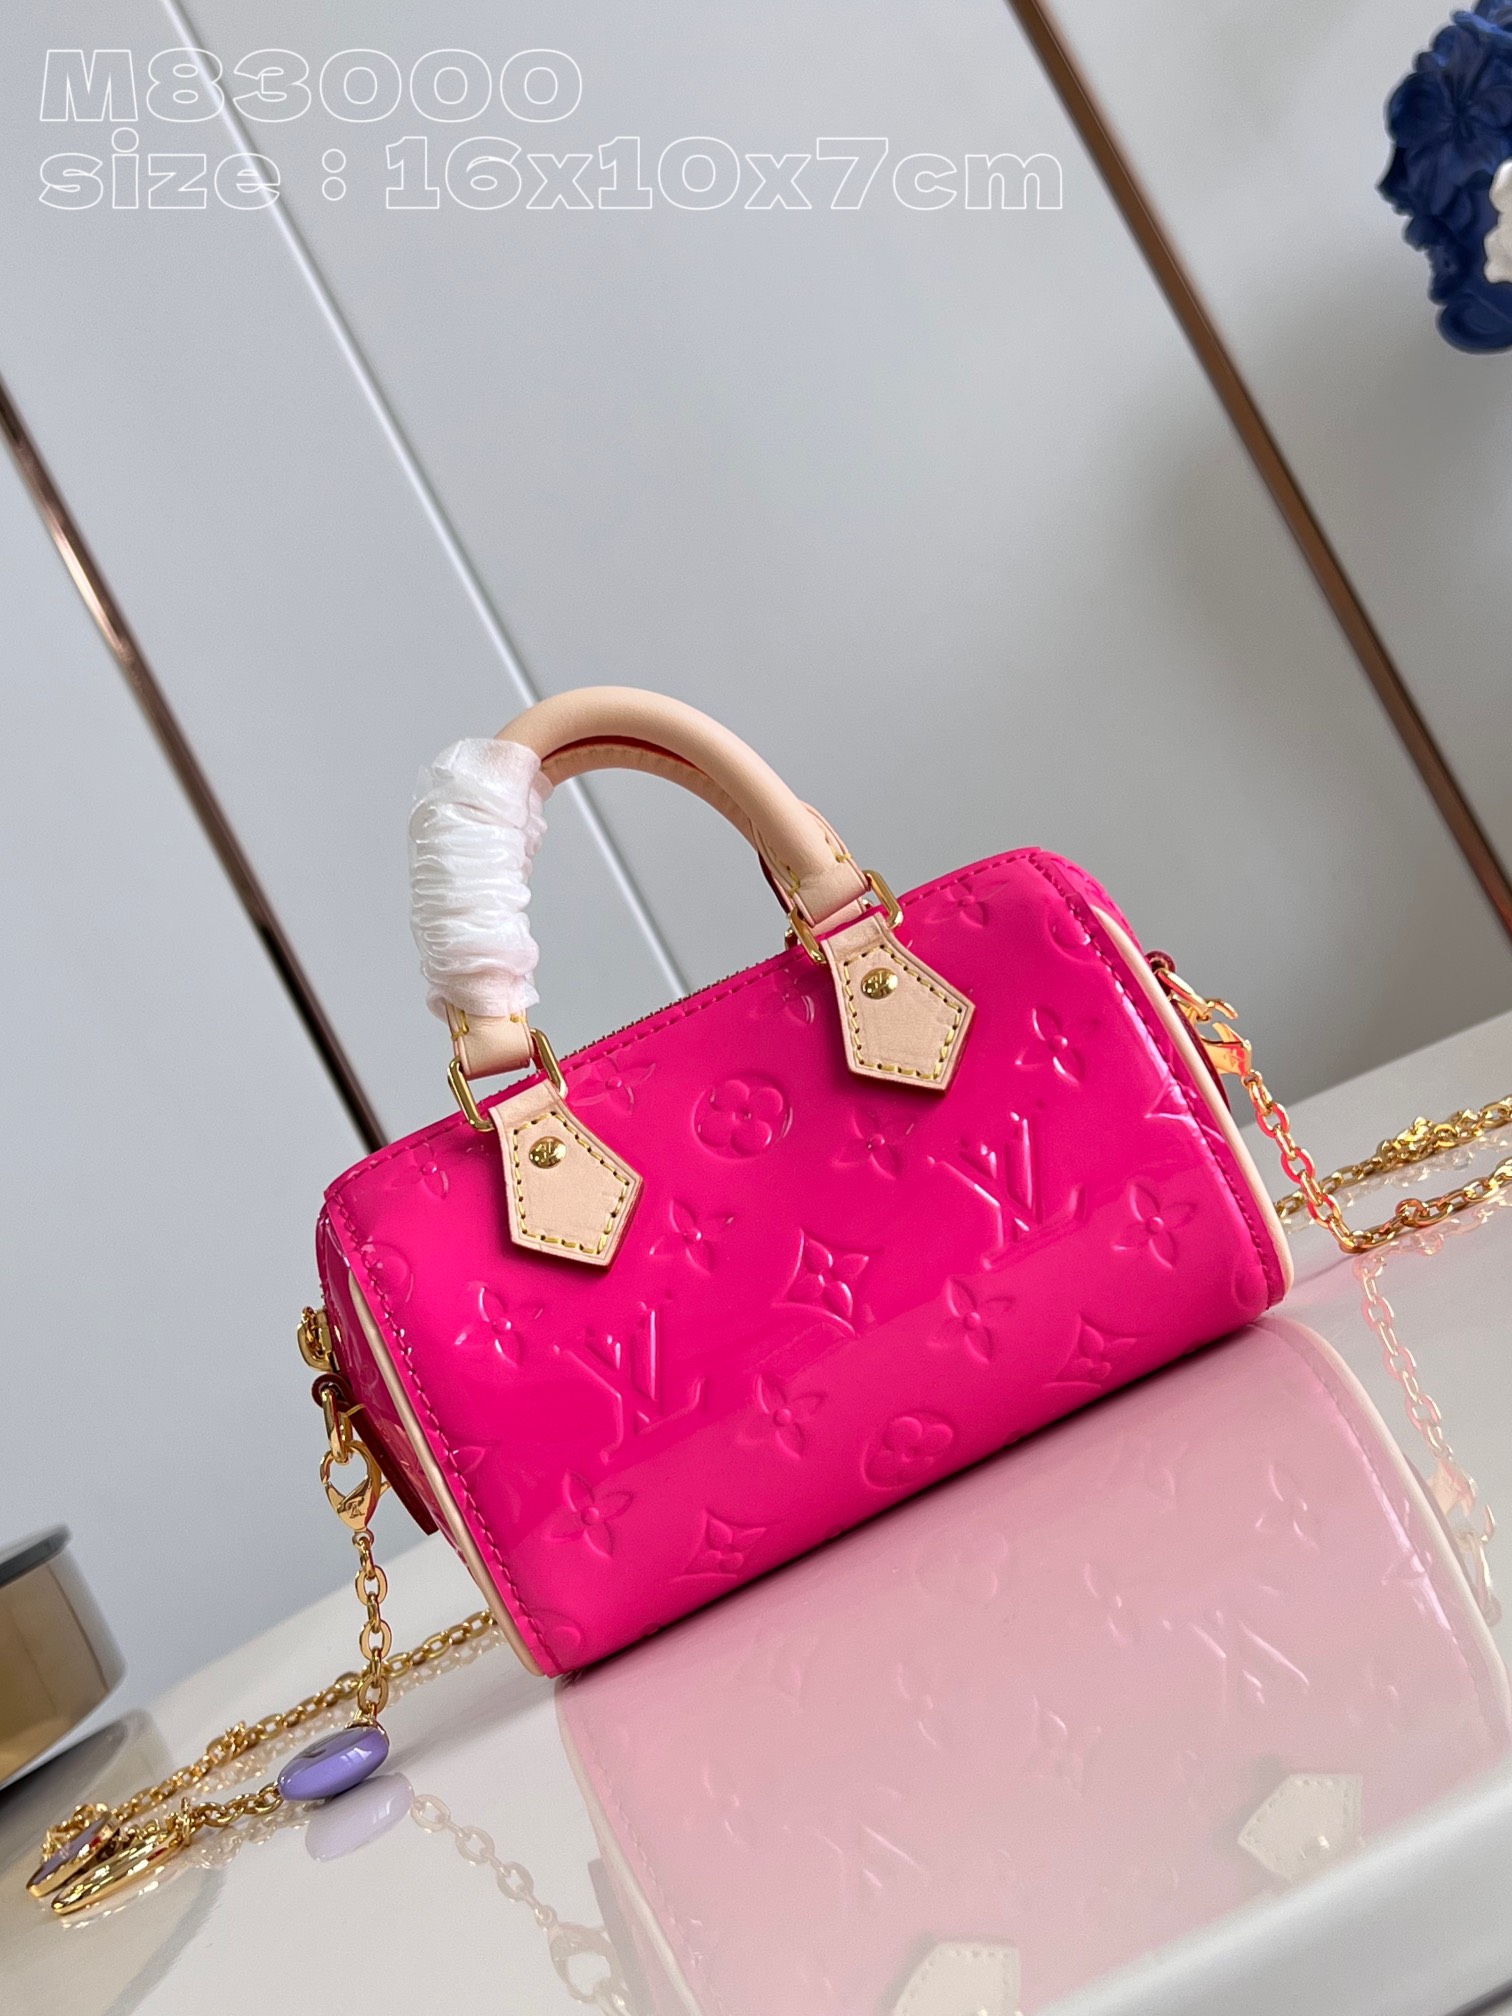 Louis Vuitton LV Speedy Kaufen
 Taschen Reisetaschen Kaufen Sie günstige hohe Qualität 1: 1 Replikat
 Gold Rot Monogram Vernis Ketten M83000